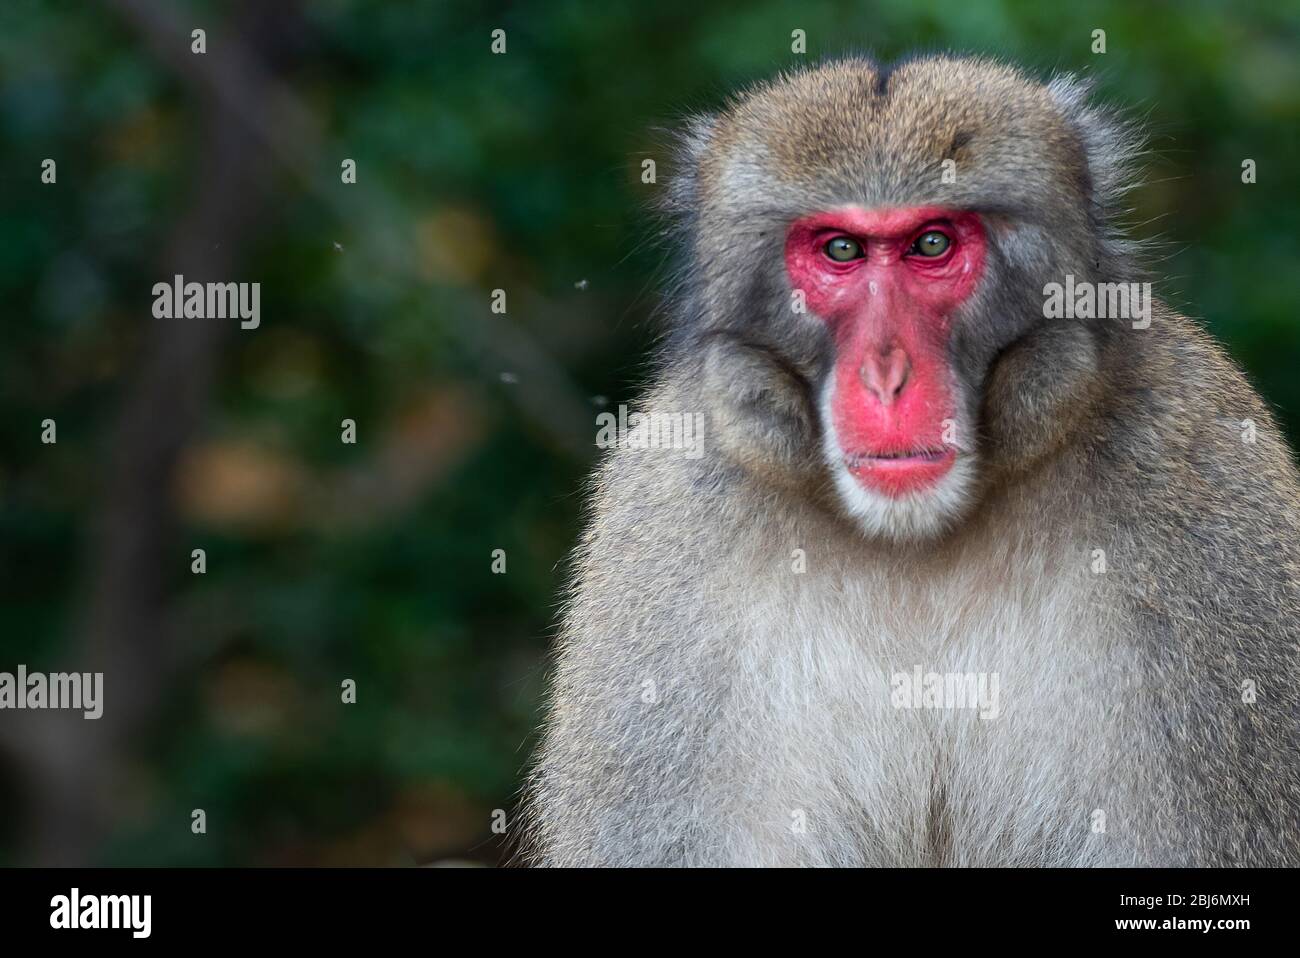 macaque monkey at Arashiyama monkey park, Kyoto, Japan Stock Photo